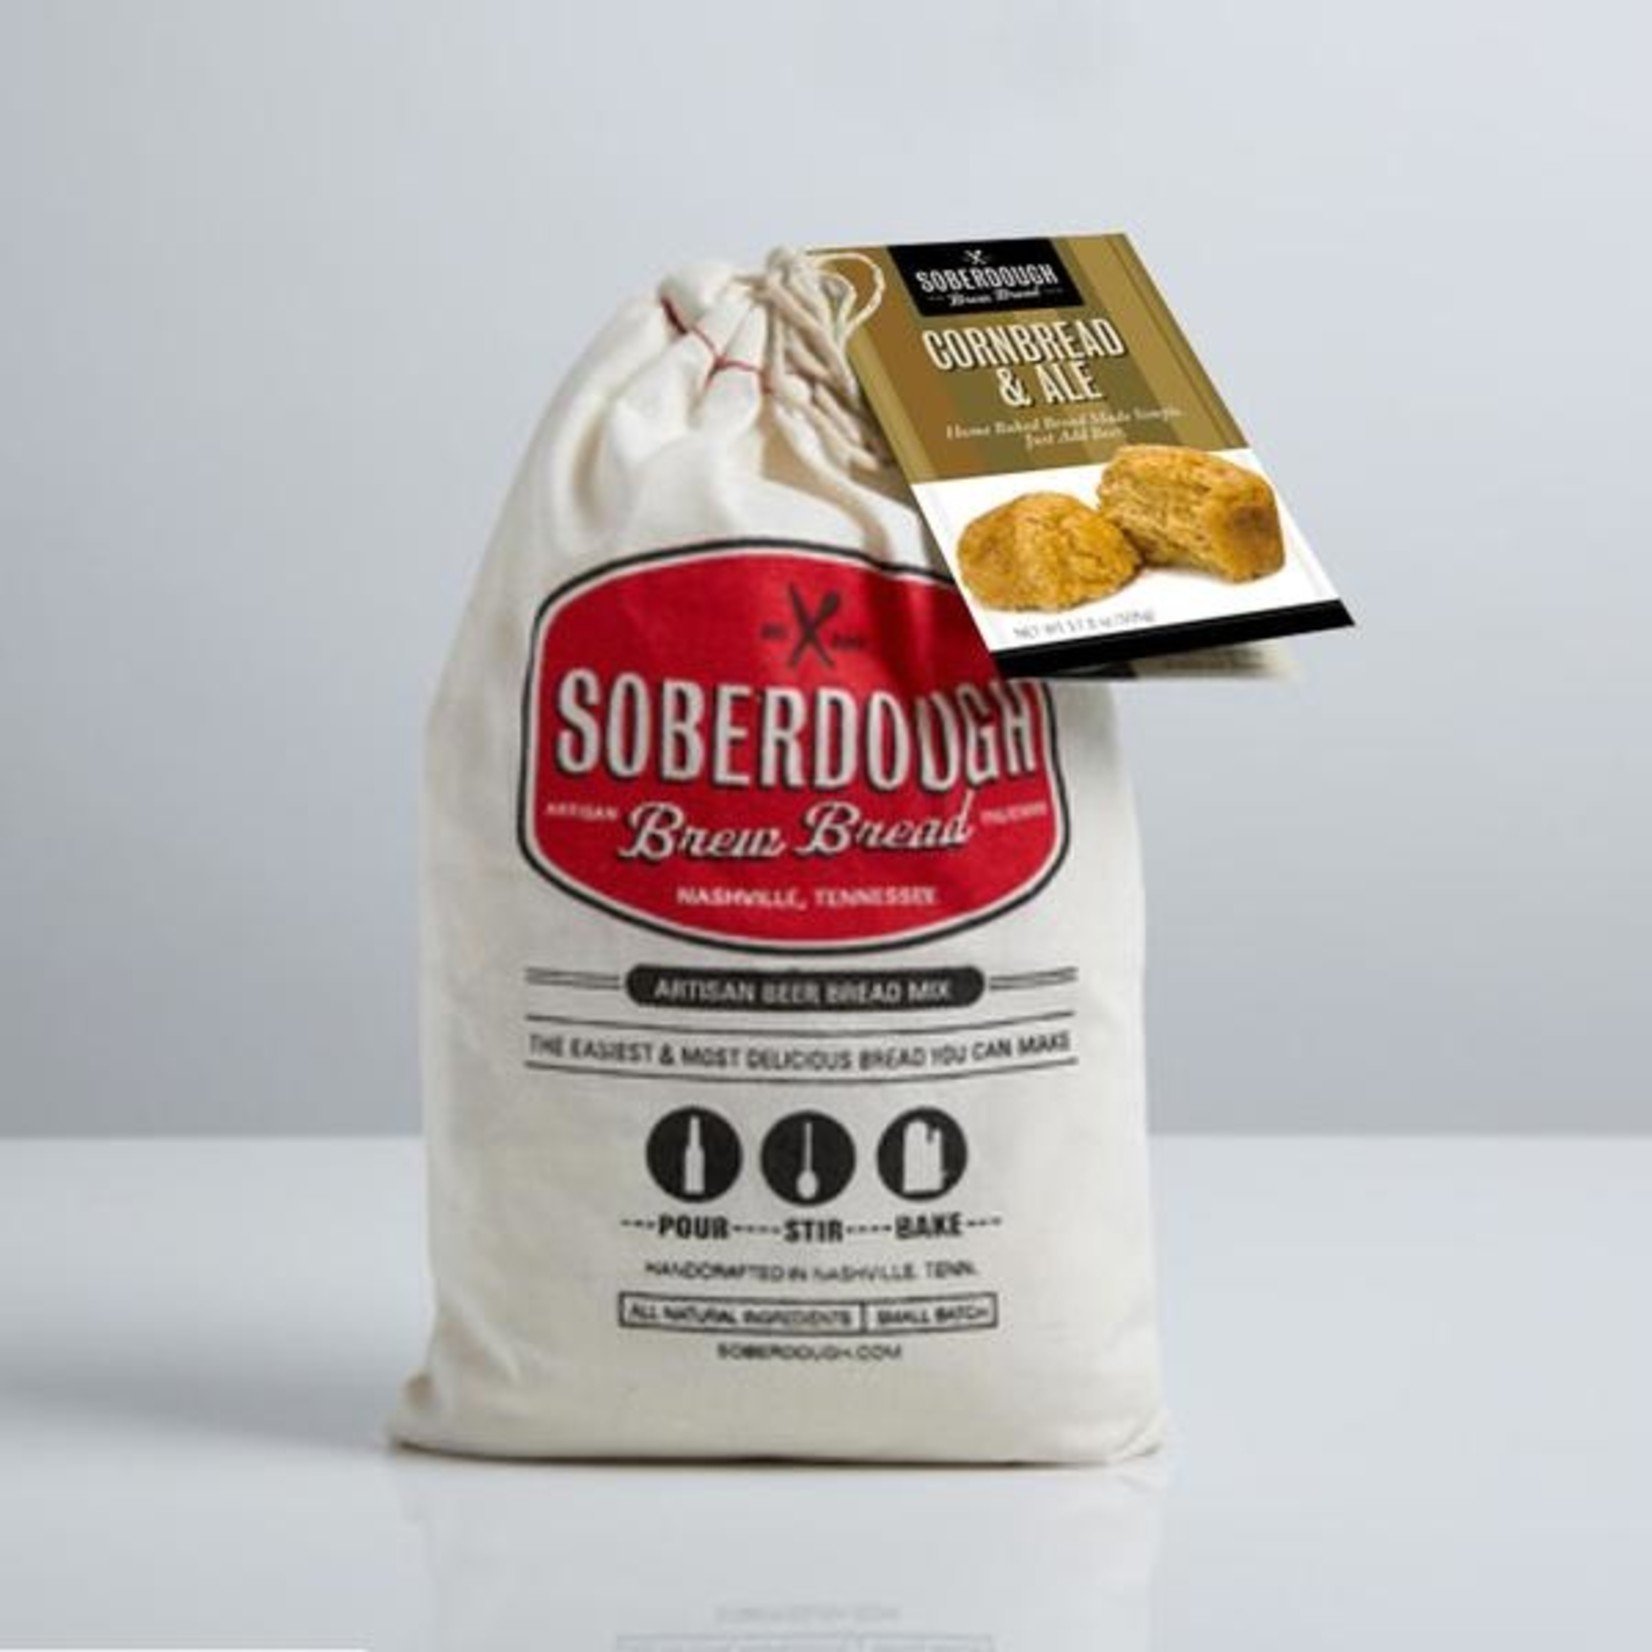 SoberDough SoberDough -  Cornbread & Ale